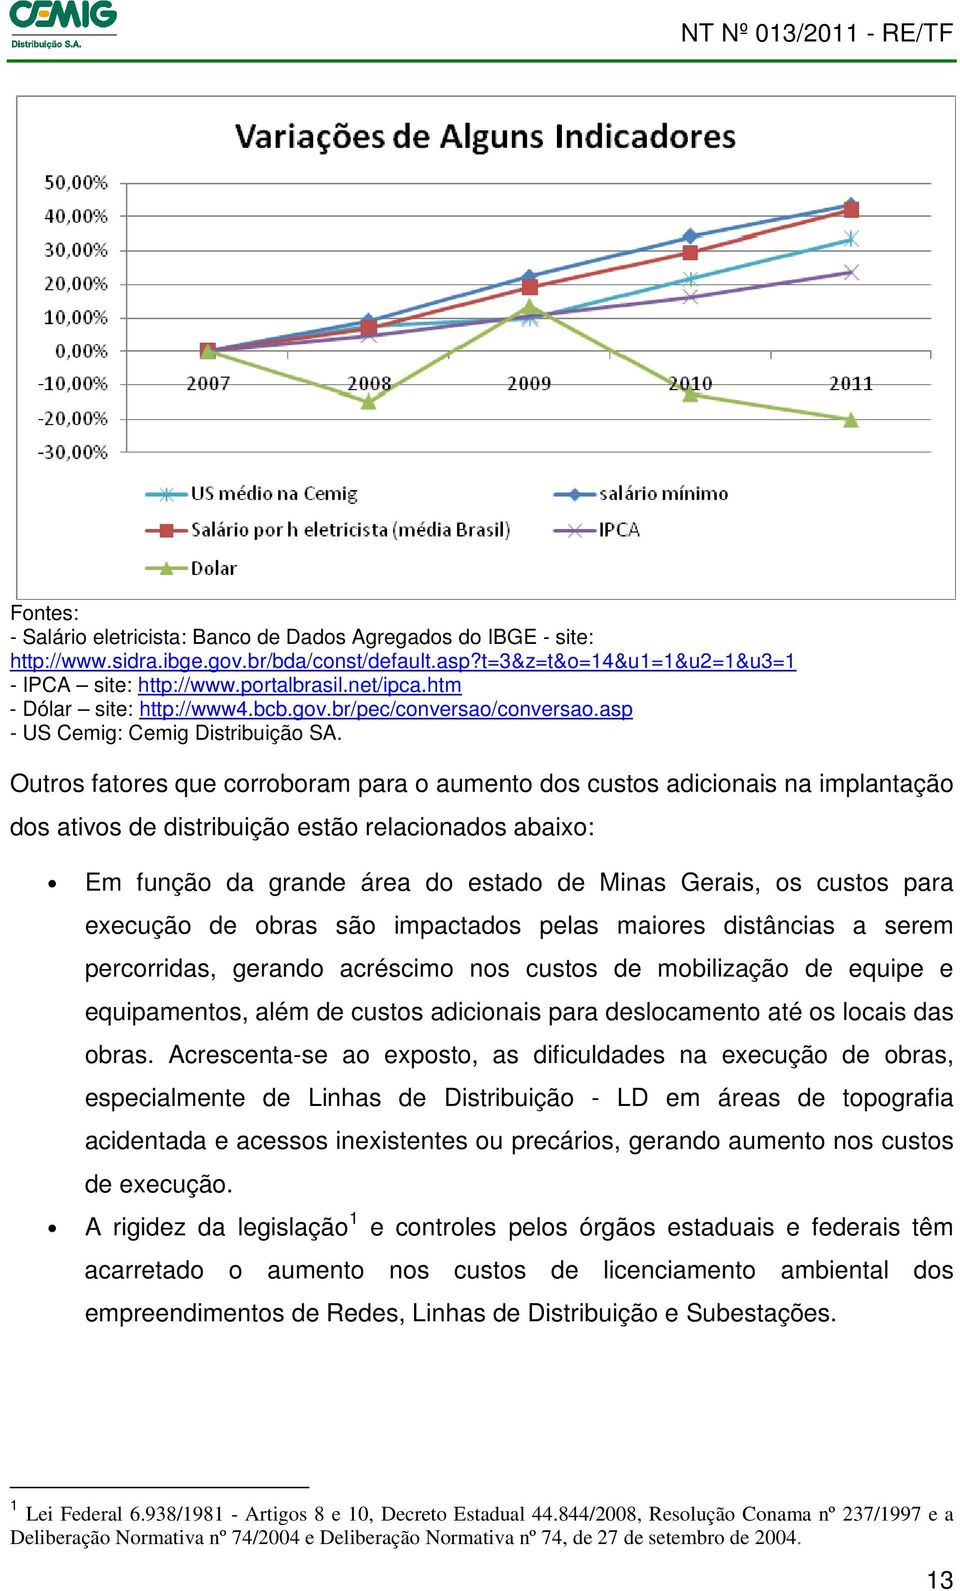 Outros fatores que corroboram para o aumento dos custos adicionais na implantação dos ativos de distribuição estão relacionados abaixo: Em função da grande área do estado de Minas Gerais, os custos